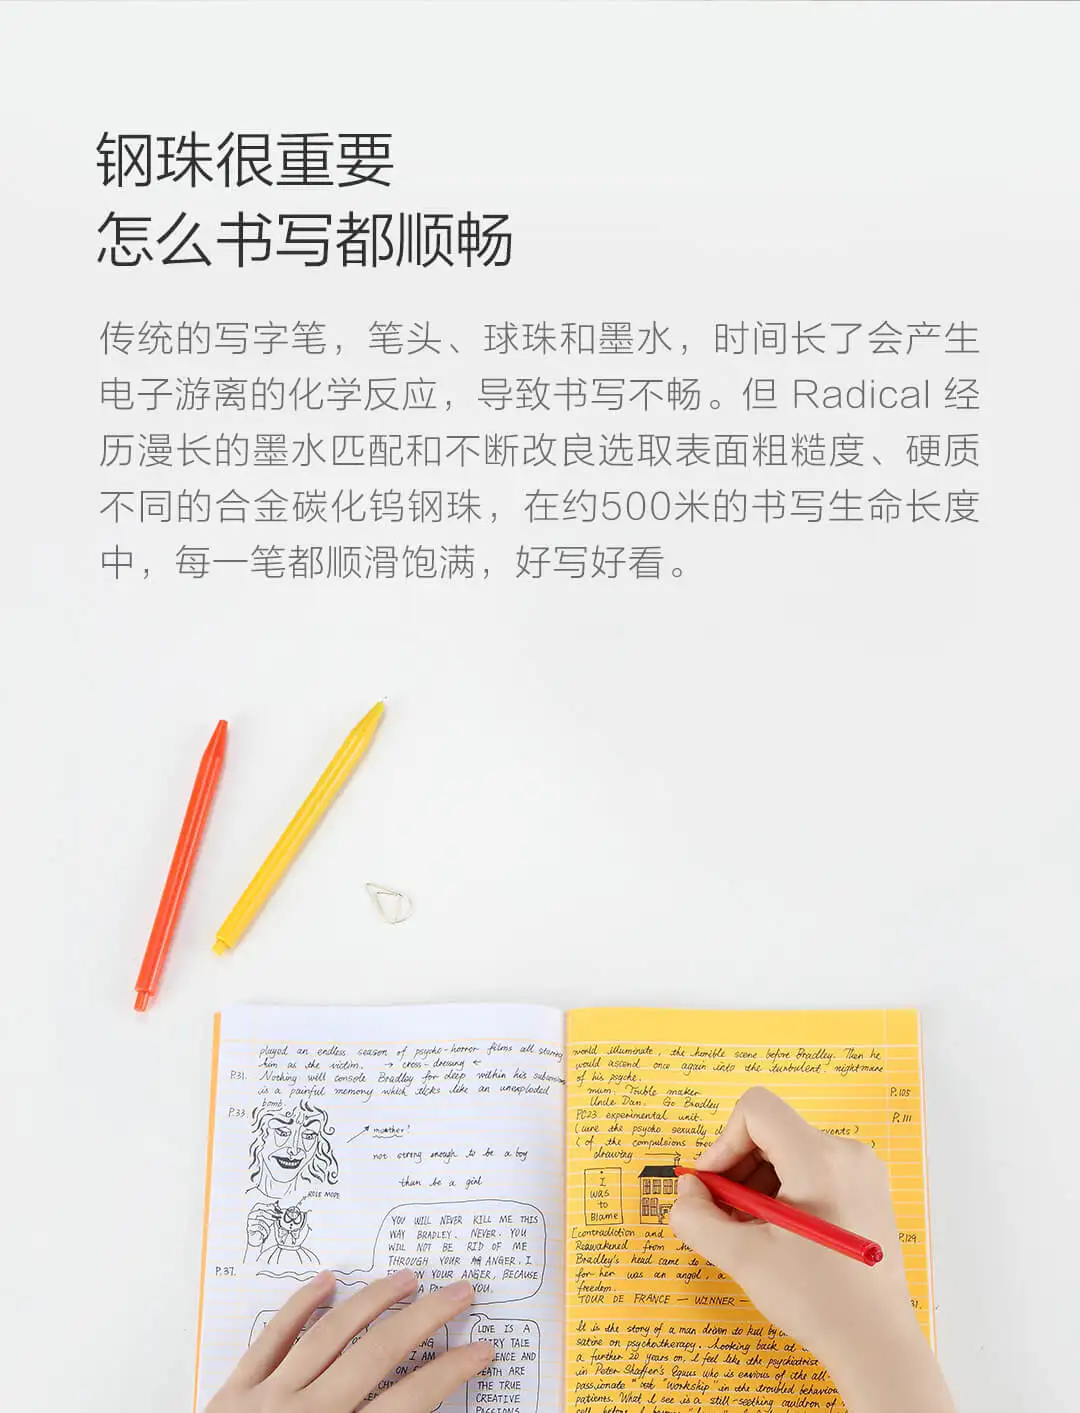 12 шт./компл. новые Xiaomi Mijia радикально Швейцарский гелевая ручка все черными чернилами Цвет карандаш подходит для работы и учебы